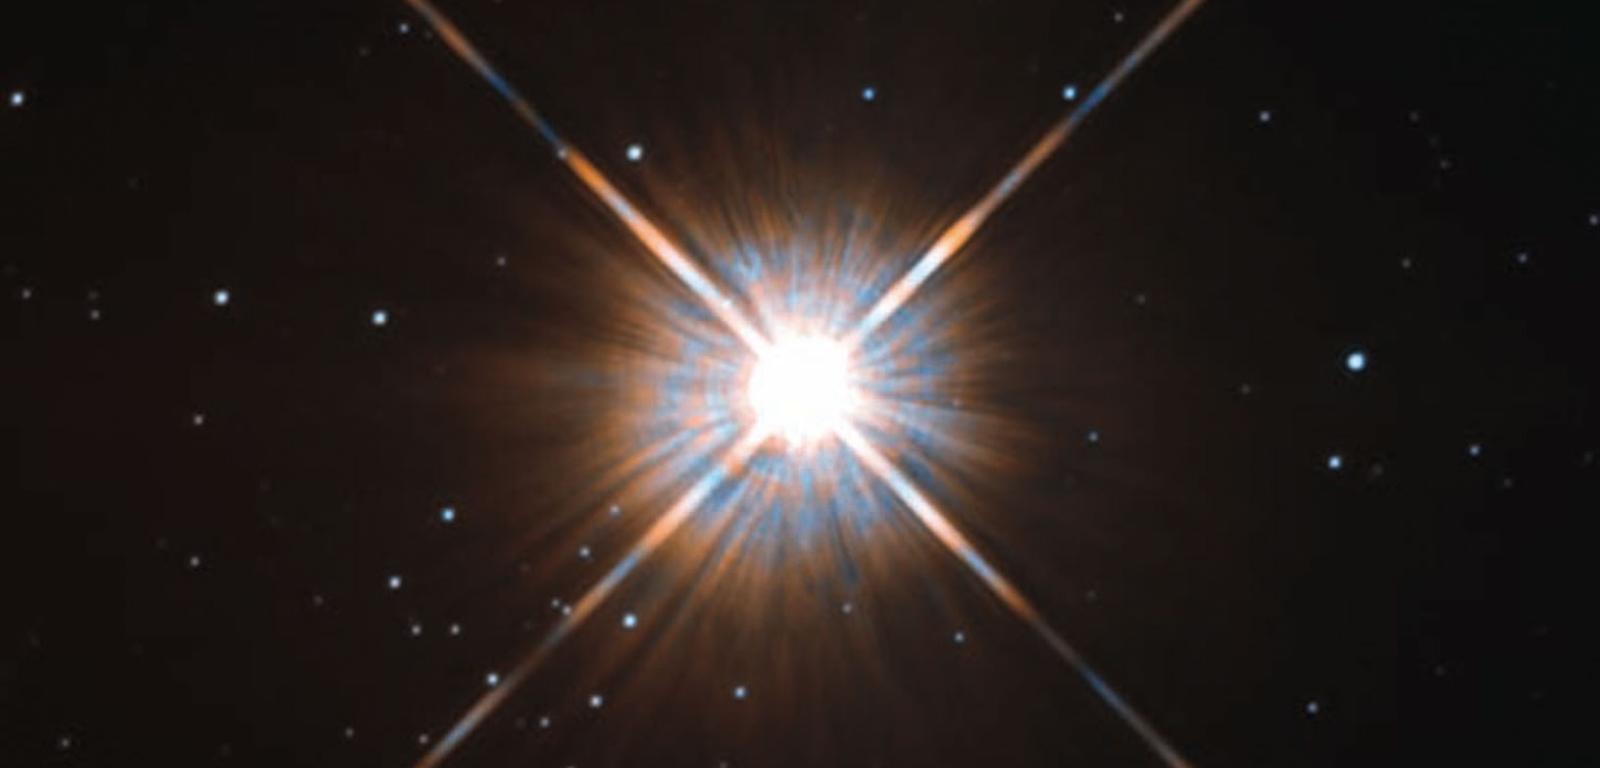 Proxima to gwiazda położona najbliżej Słońca. Wciąż jednak skraca się dystans między tymi obiektami. Za jakieś 26 700 lat będzie to już 3,1 l.ś. Po tym czasie najbliżej Słońca znajdzie się Ross 248.